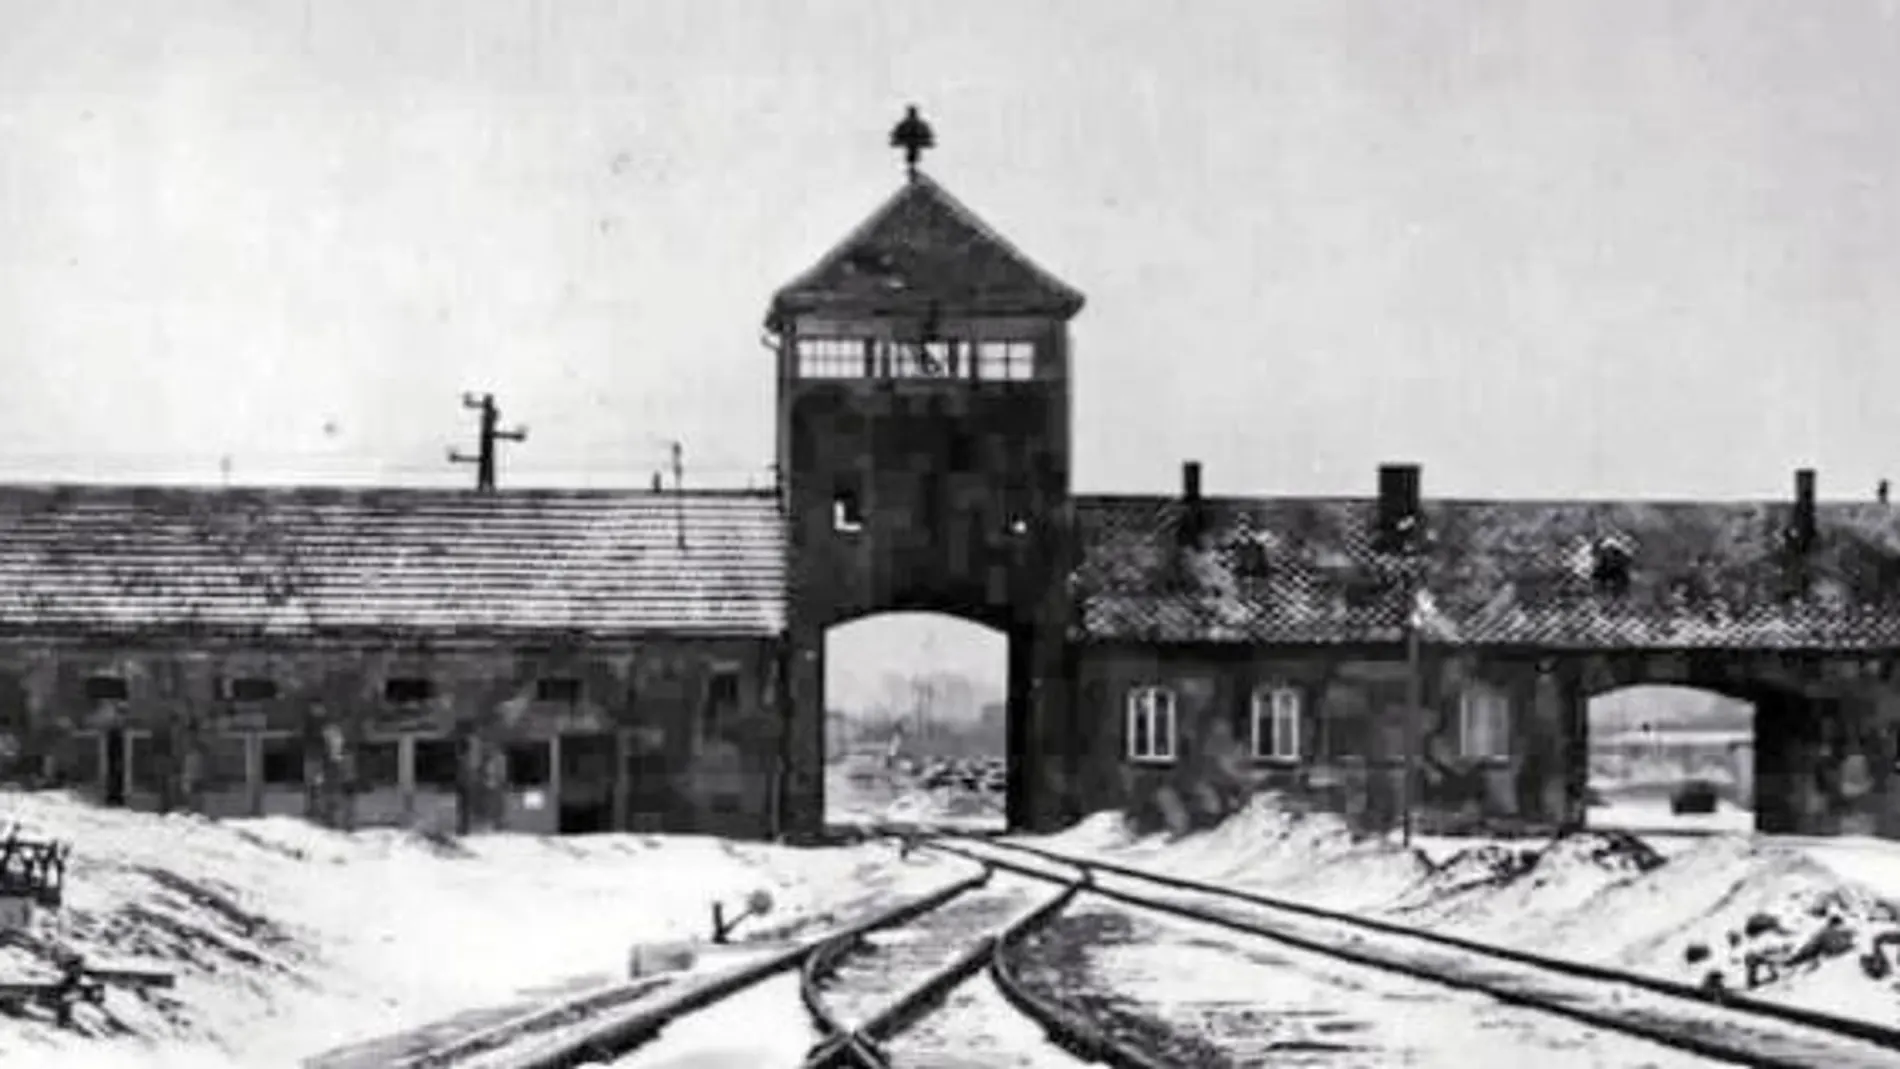 La emblemática entrada a uno de los puntos negros del Holocausto, Auschwitz